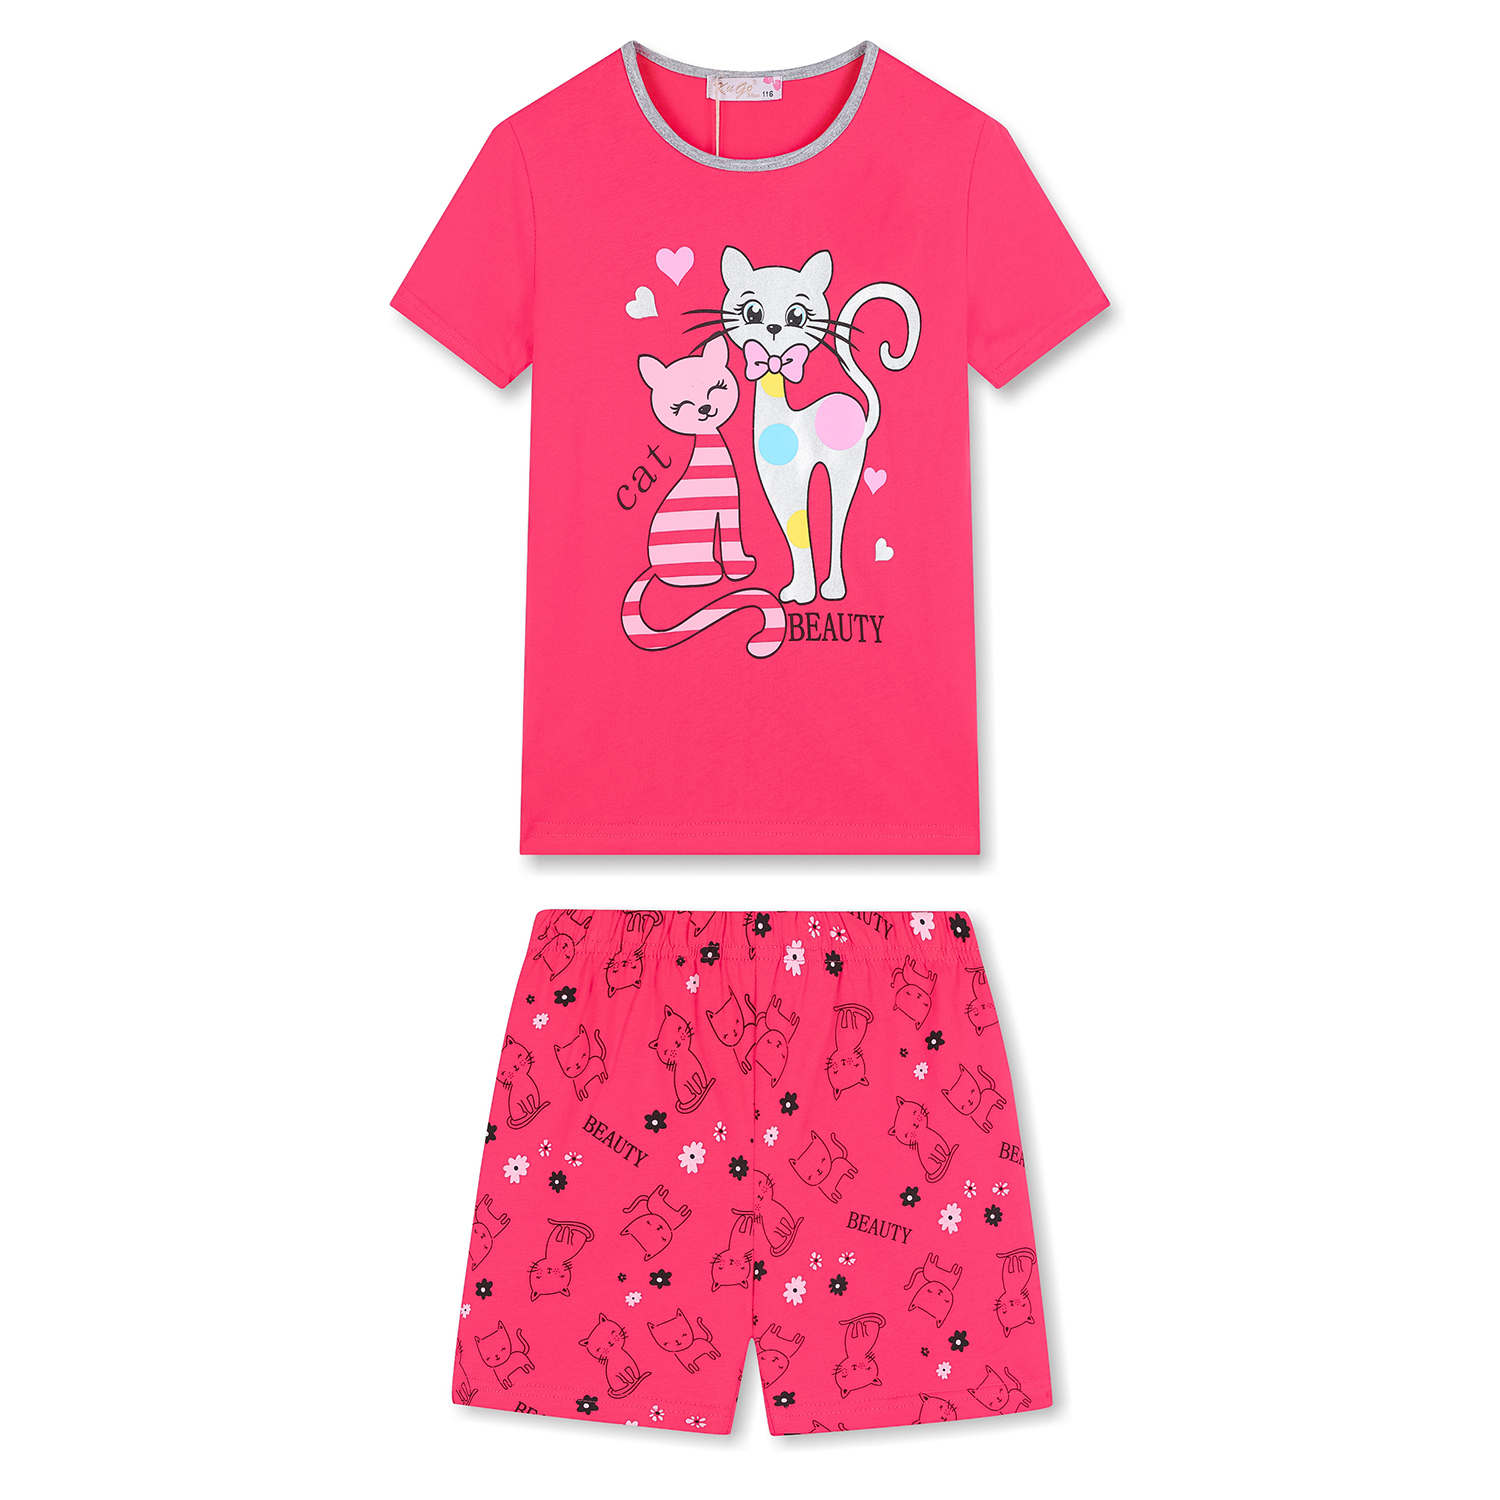 Dívčí letní pyžamo - KUGO MP1505, sytě růžová Barva: Růžová sytě, Velikost: 98